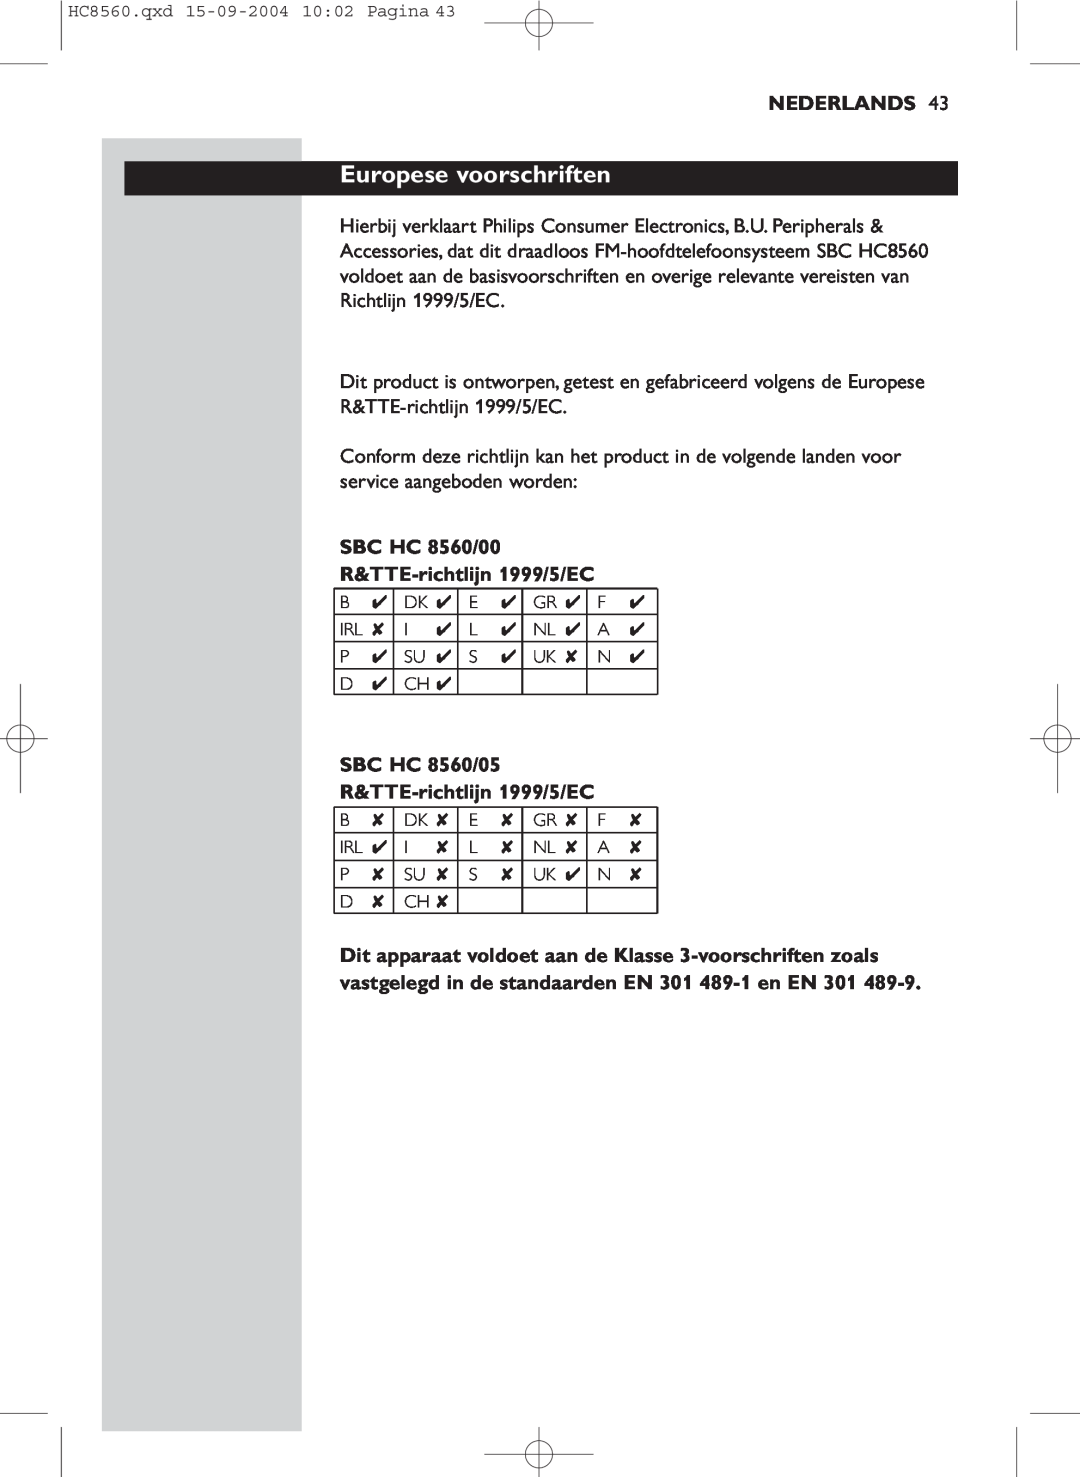 Philips manual Europese voorschriften, Nederlands, SBC HC 8560/00 R&TTE-richtlijn1999/5/EC 